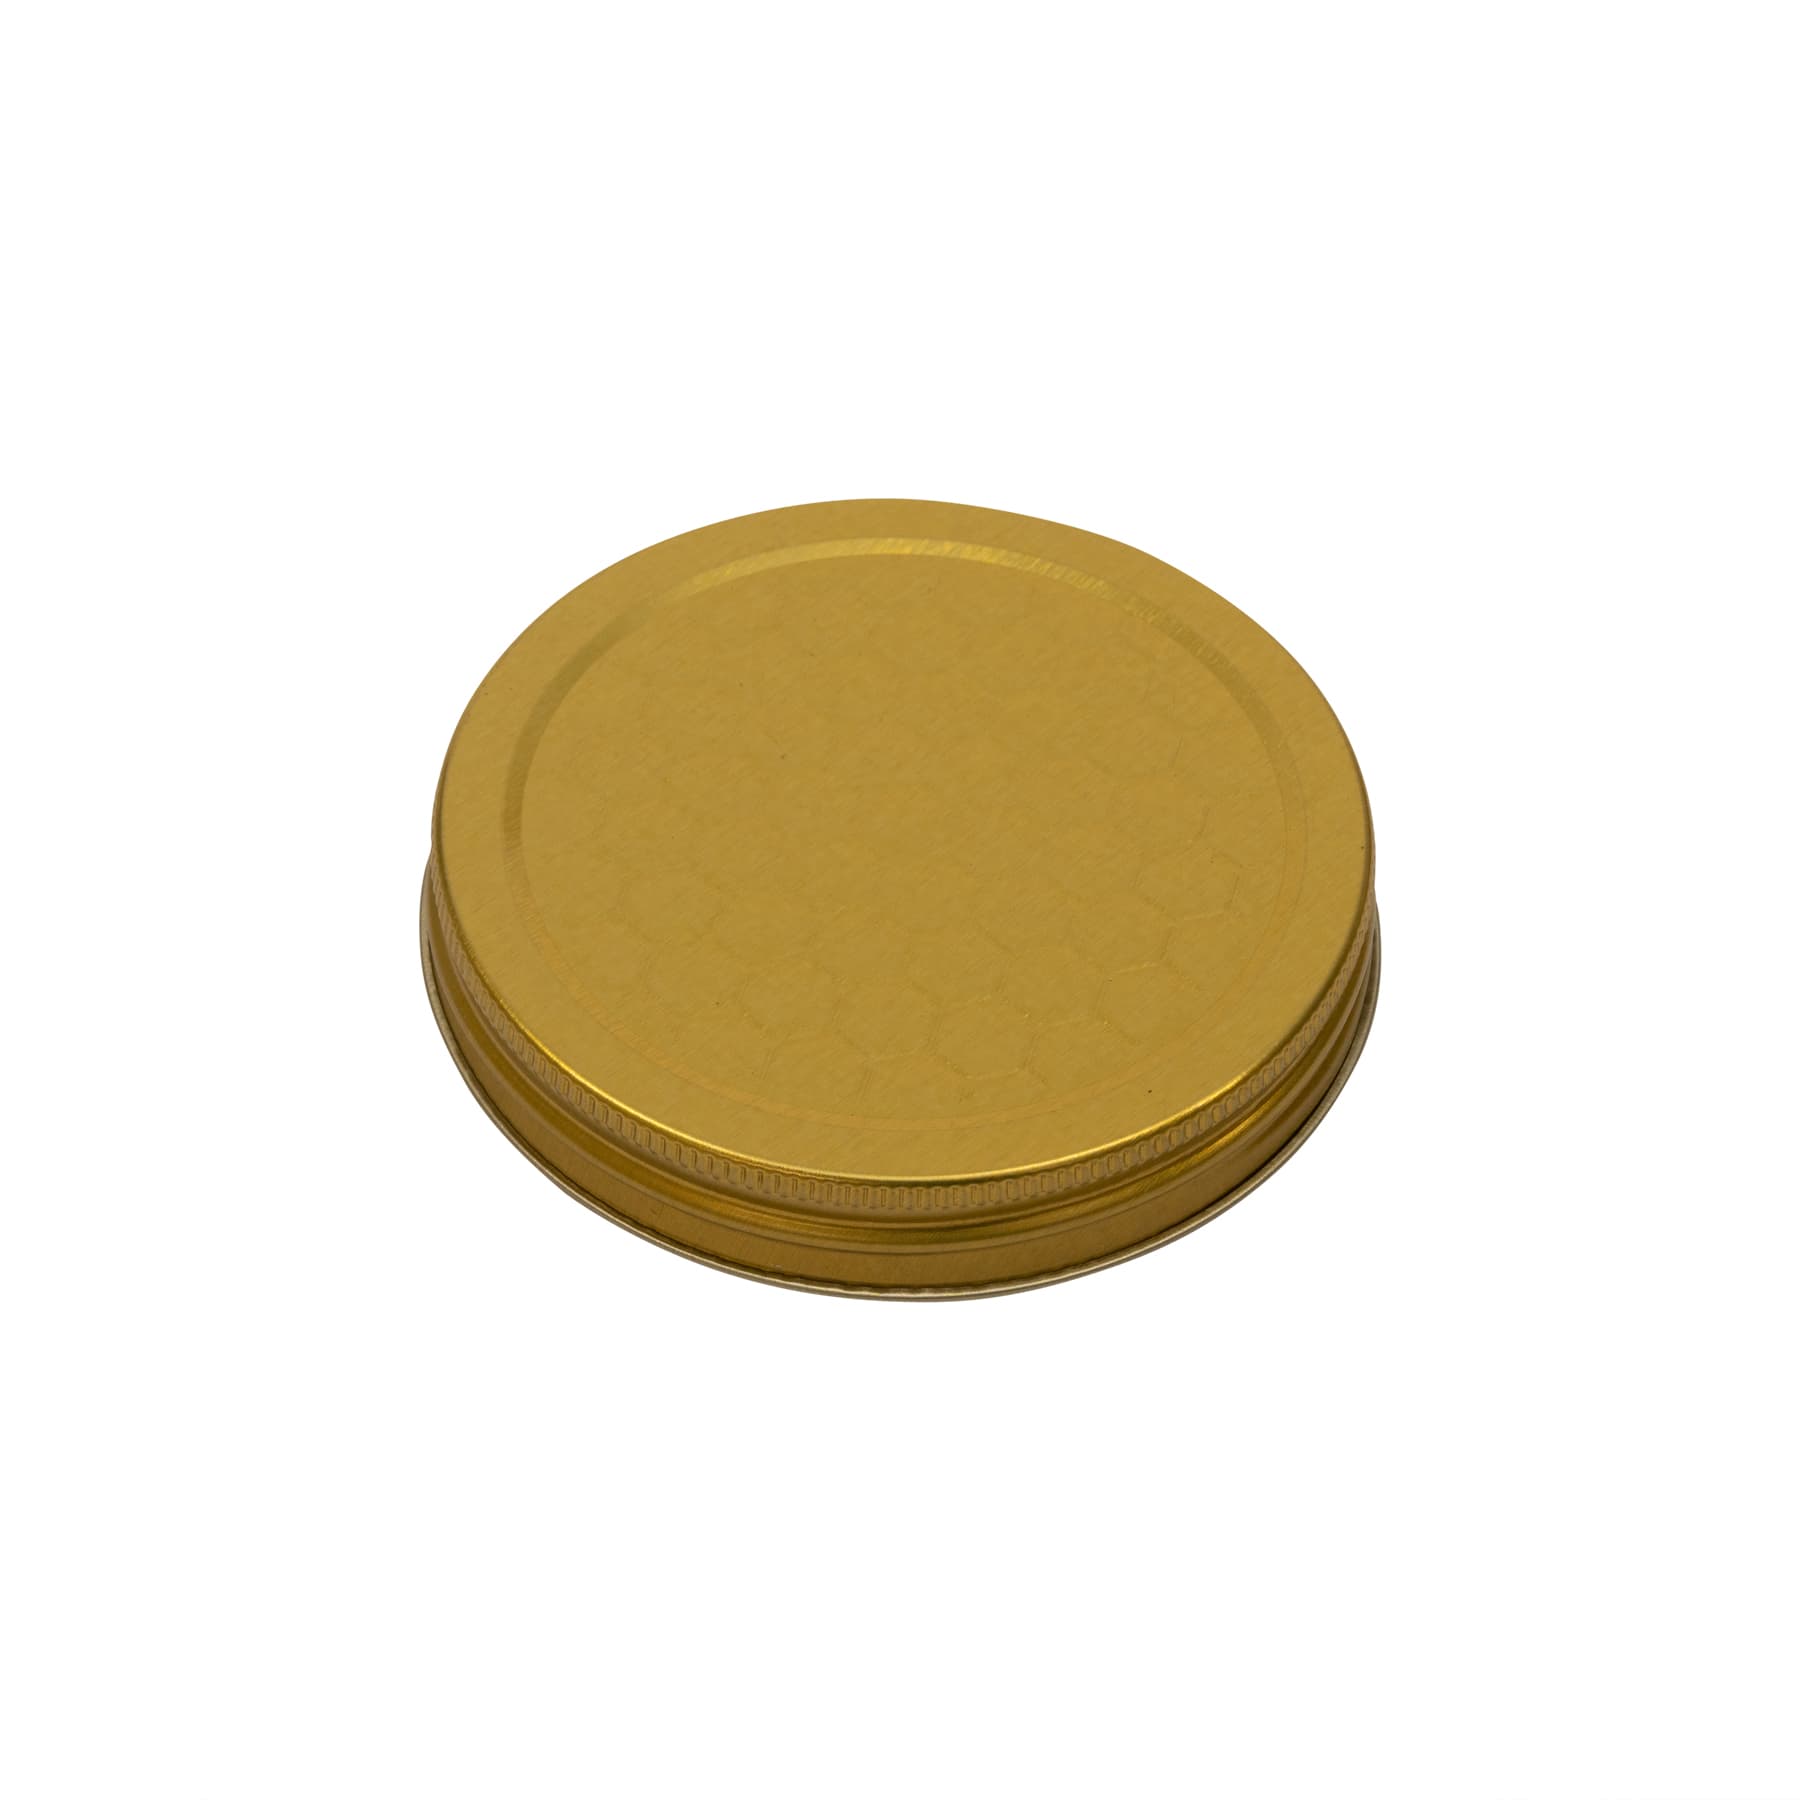 Schraubdeckel metall für 250 g Glas (Weißblech gold lackiert) mit geprägtem Wabenmuster 68/16 mm